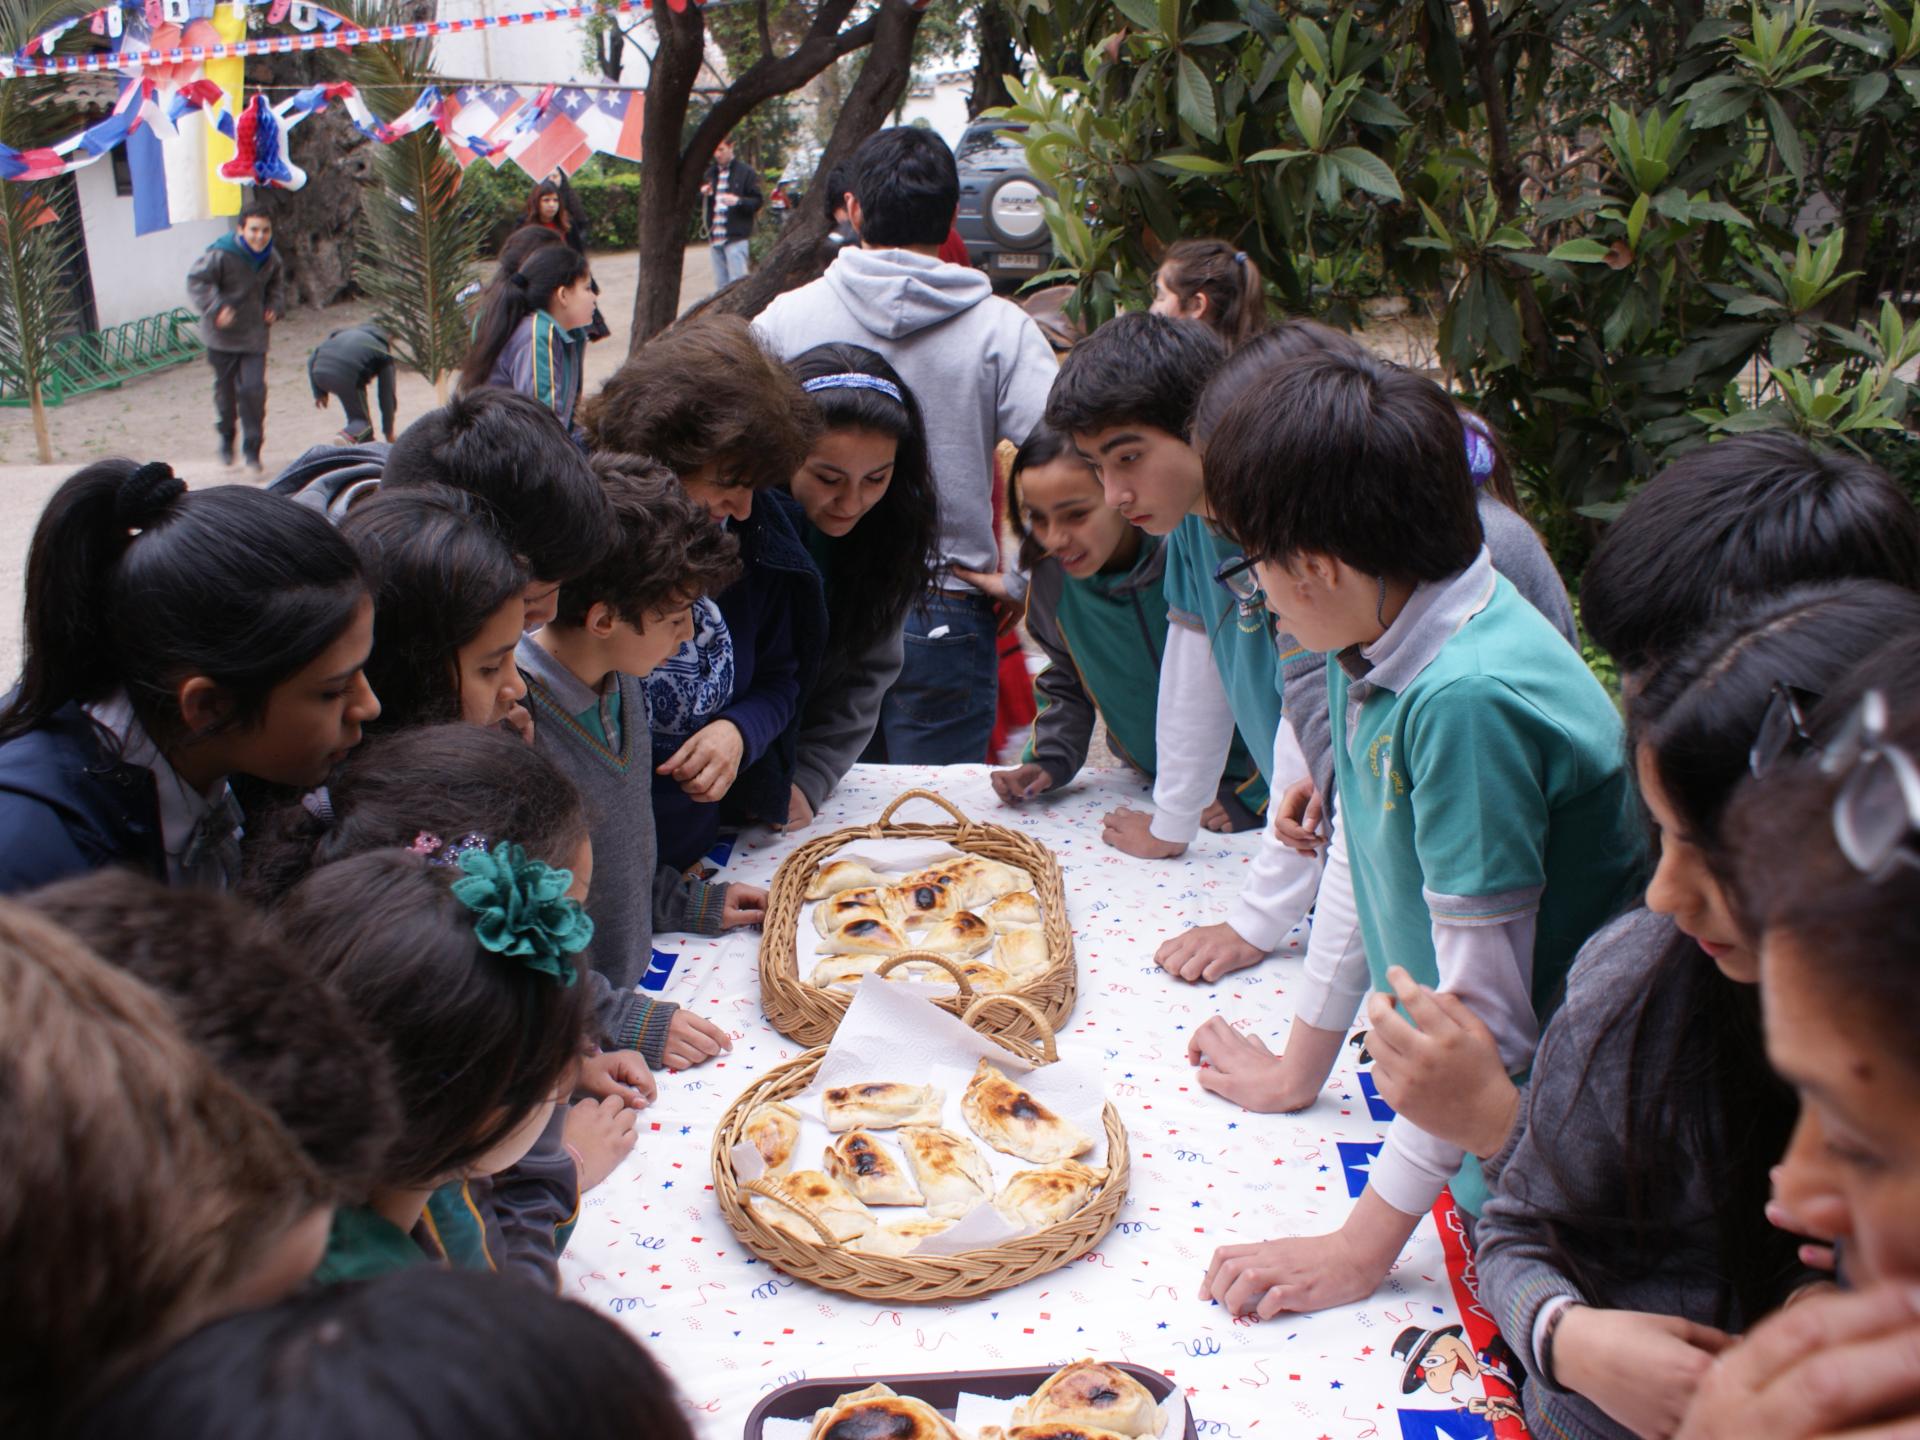 Niños y niñas rodeando una mesa que contiene canastas de empanadas de horno